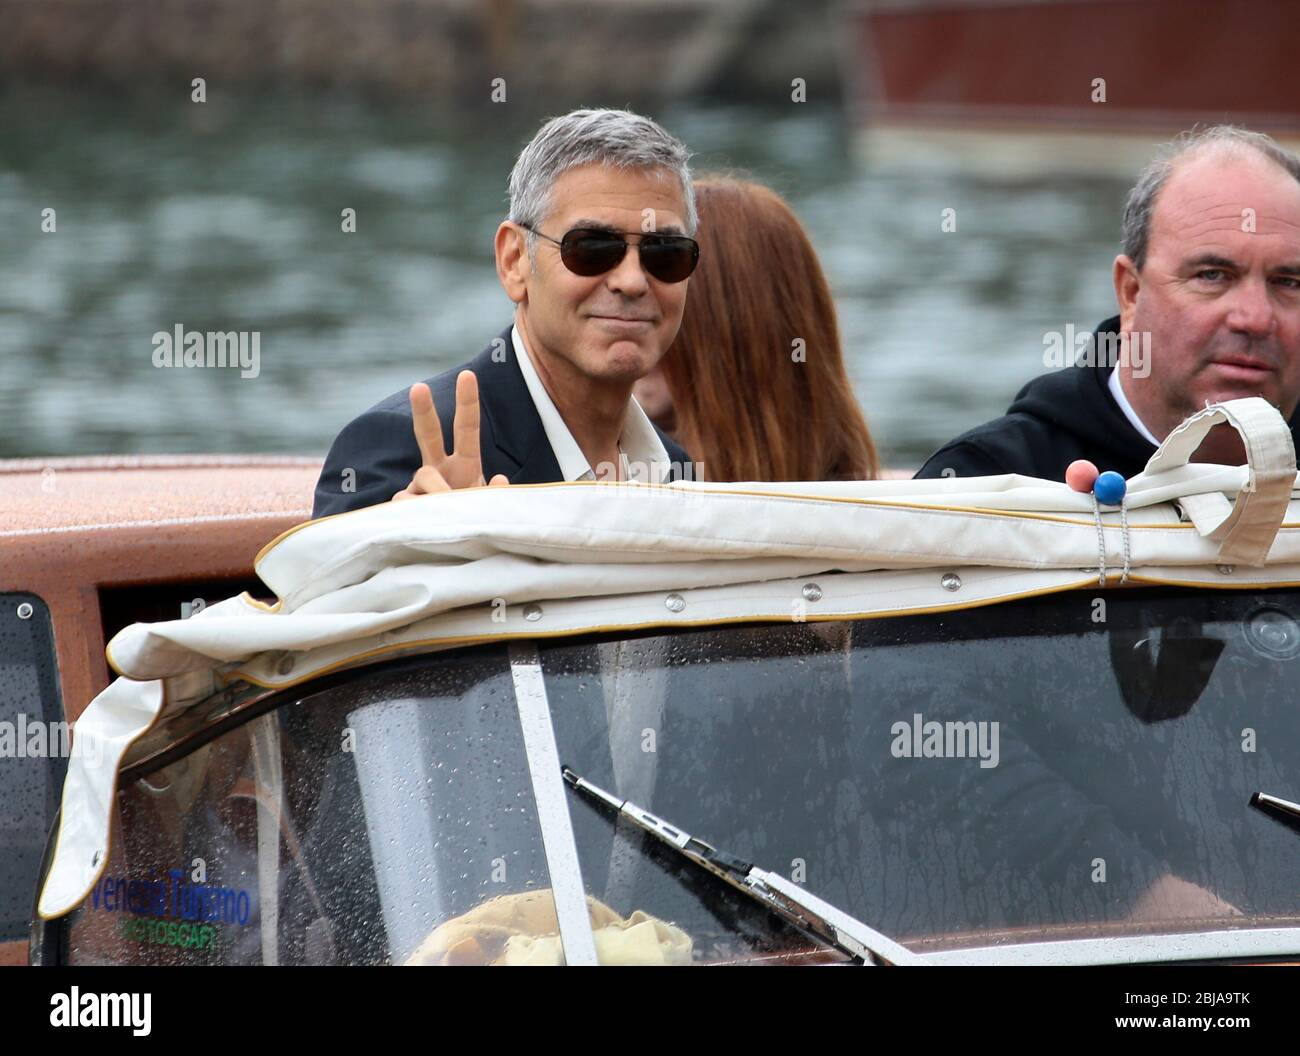 VENISE, ITALIE - SEPTEMBRE 01: George Clooney sont vus pendant les 74. Festival du film de Venise le 1er septembre 2017 à Venise, Italie Banque D'Images